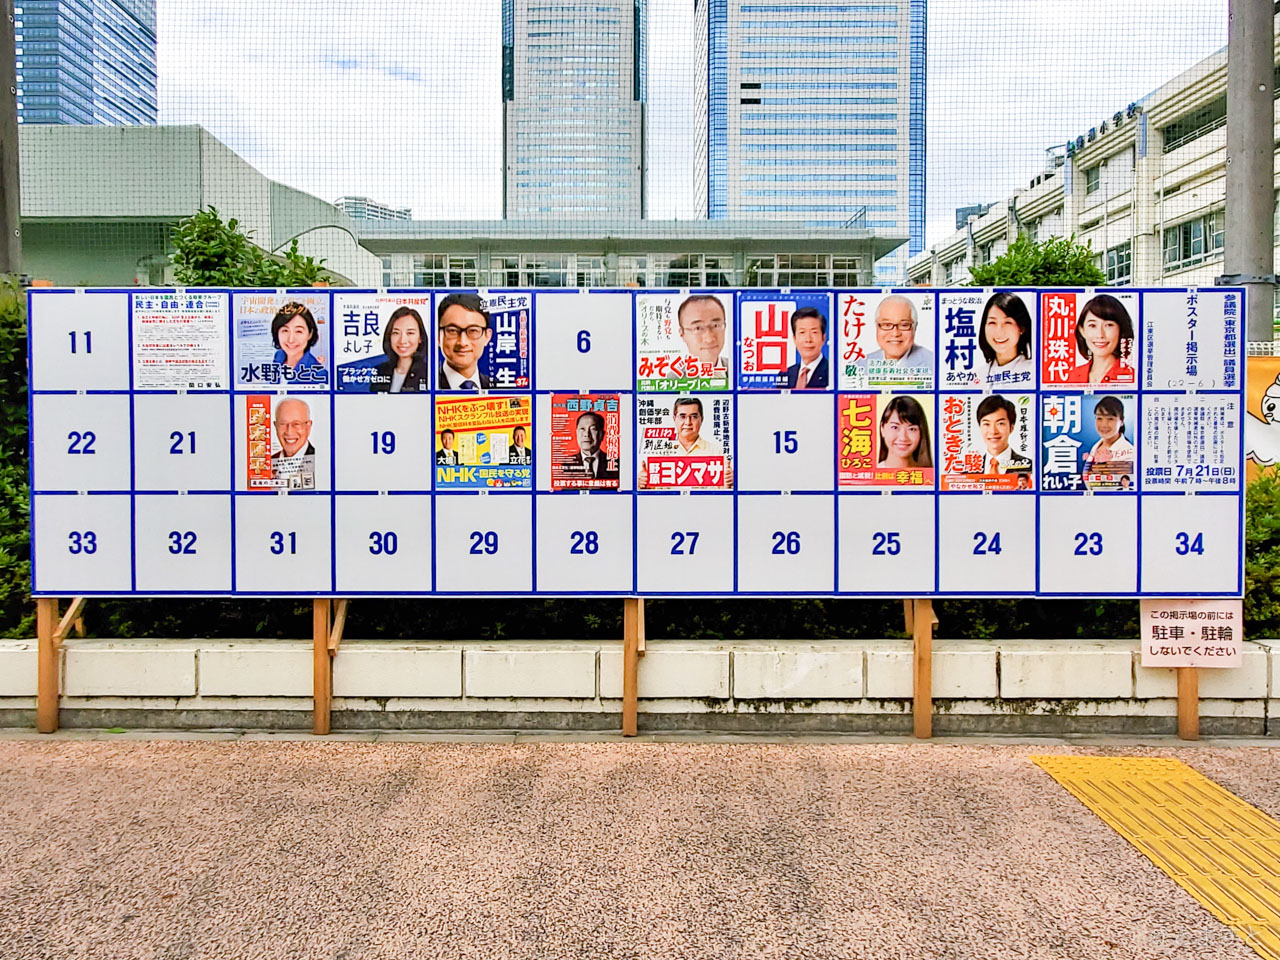 【参院選2019】東京選挙区・比例代表選の候補者一覧、投票方法と期日前投票所まとめ